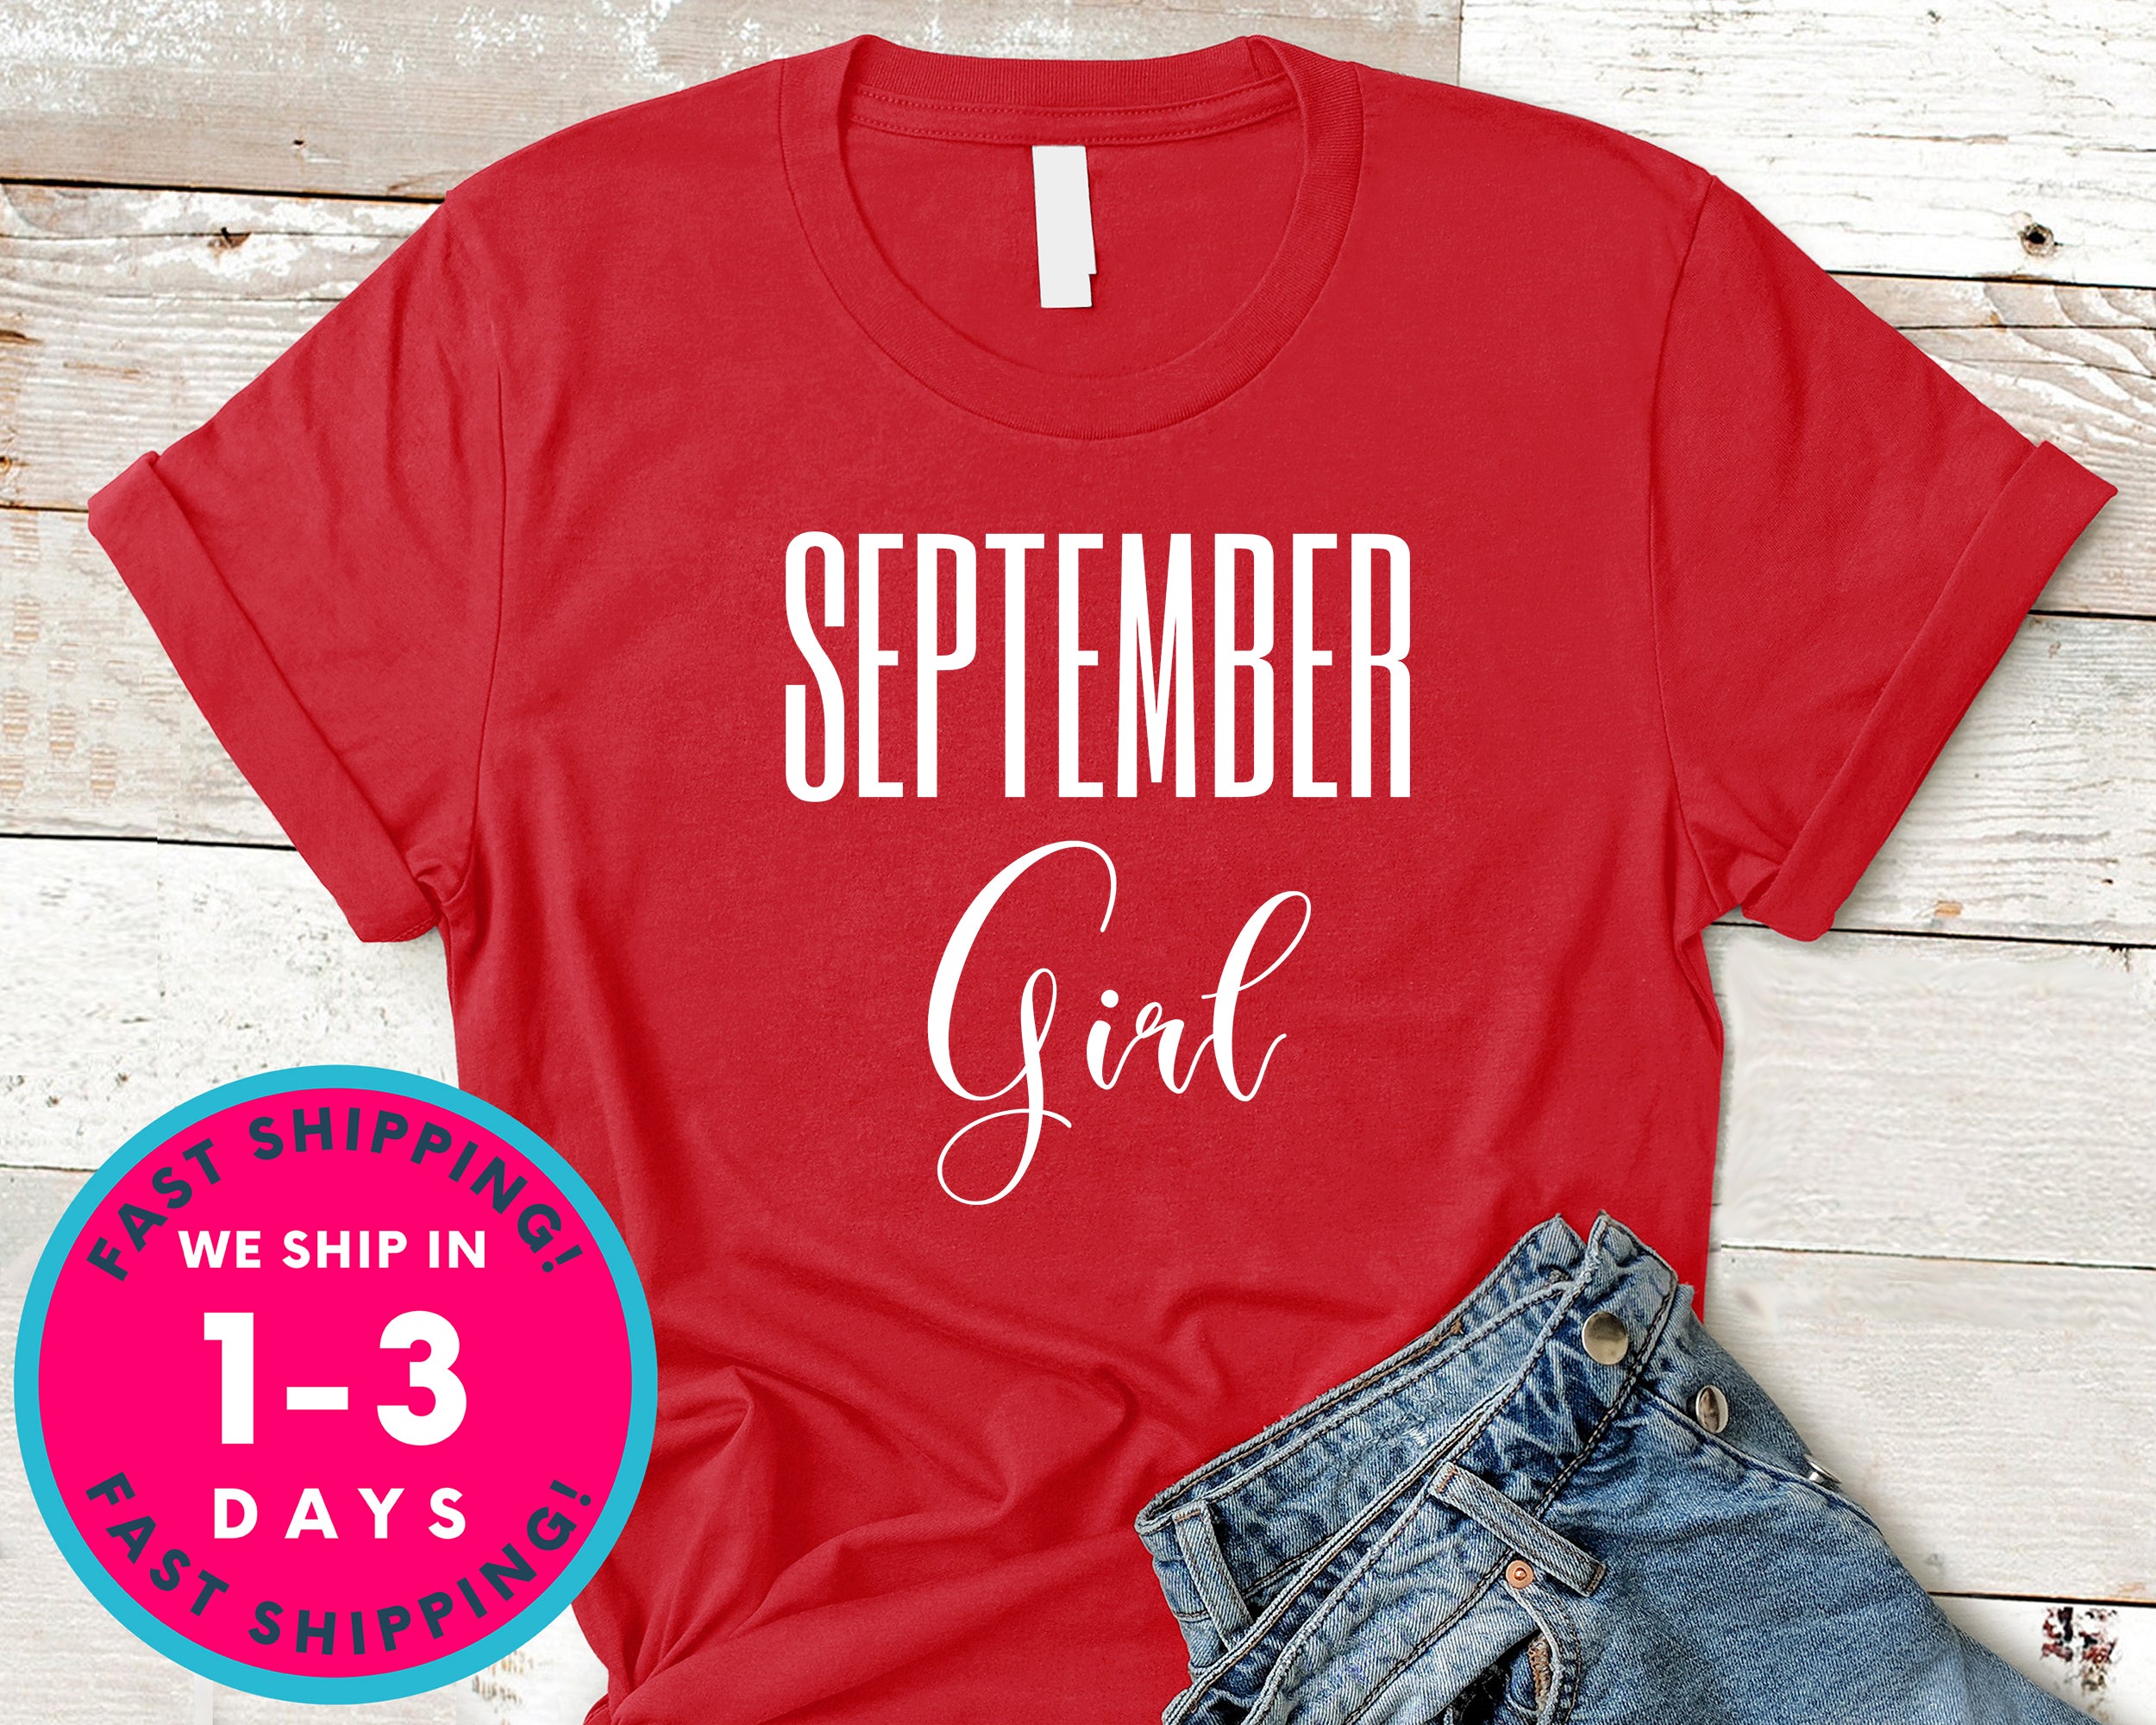 September Girl T-Shirt - Birthday Shirt